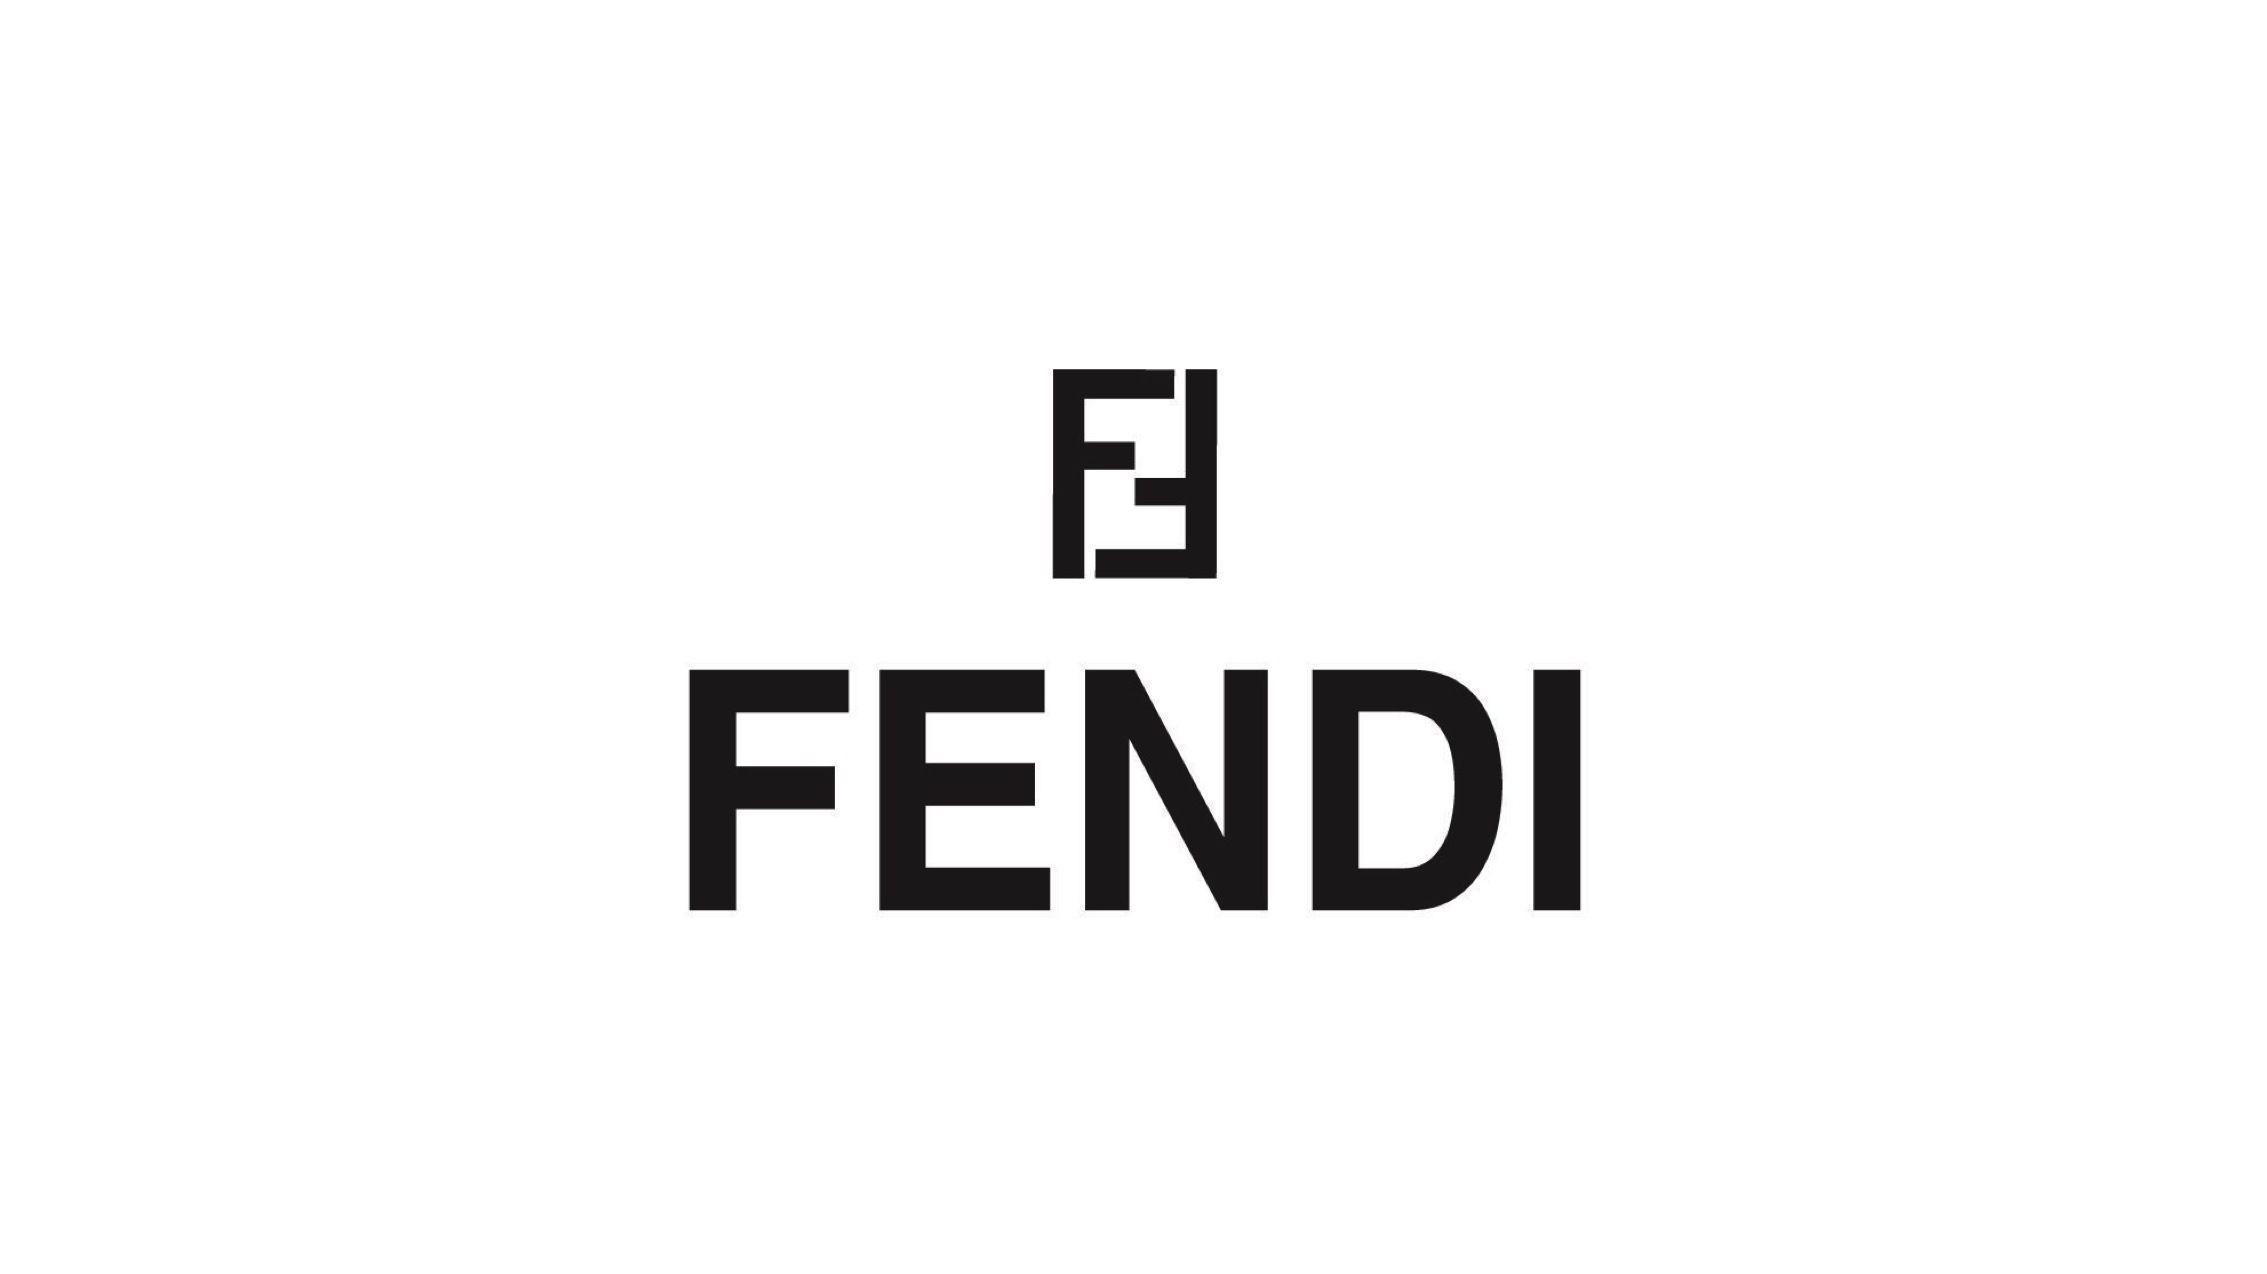 Fendi HD Wallpapers - Wallpaper Cave